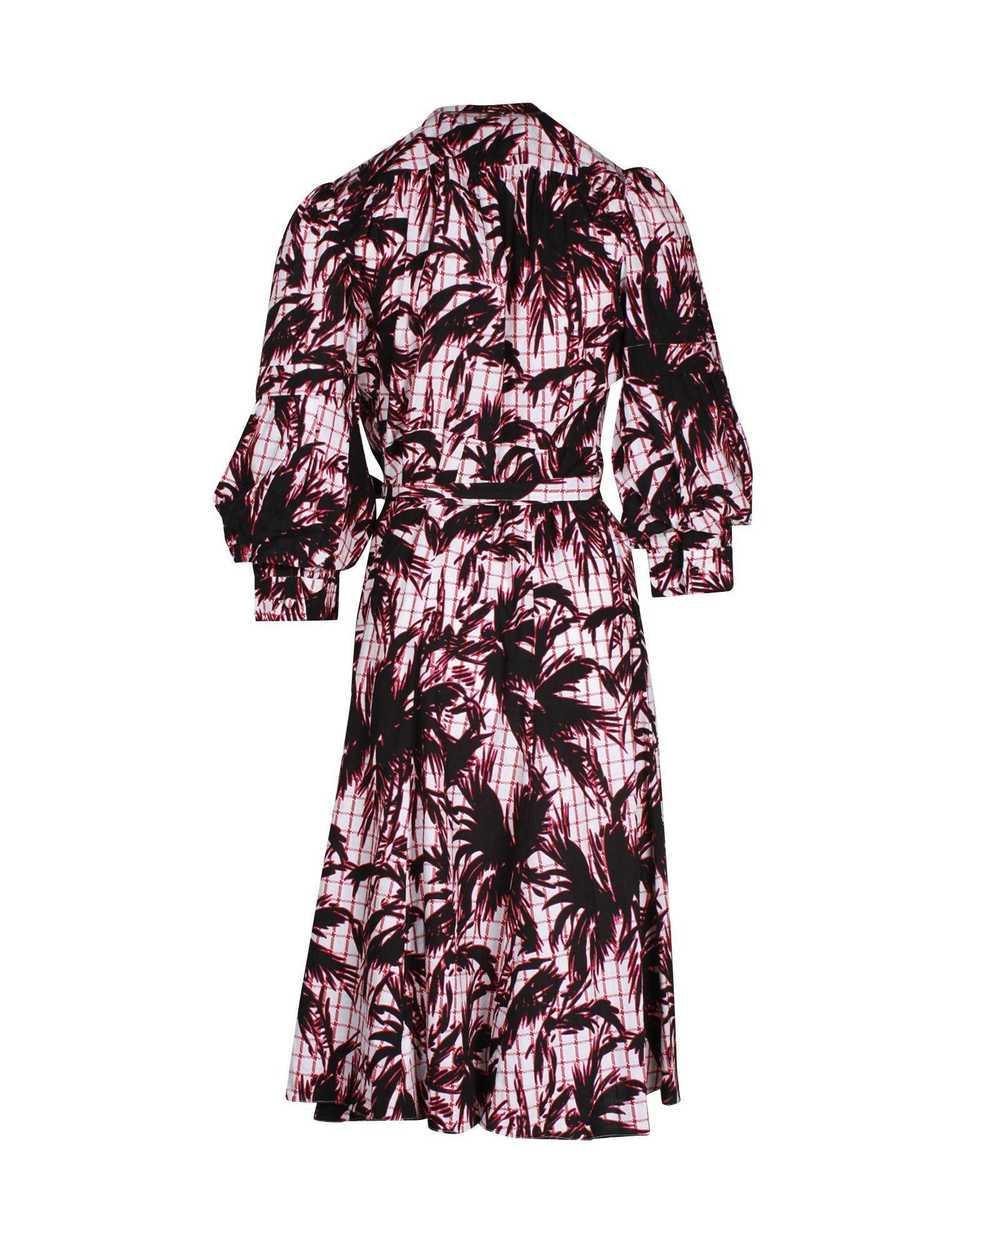 Diane von Furstenberg Print Wrap Dress - image 2